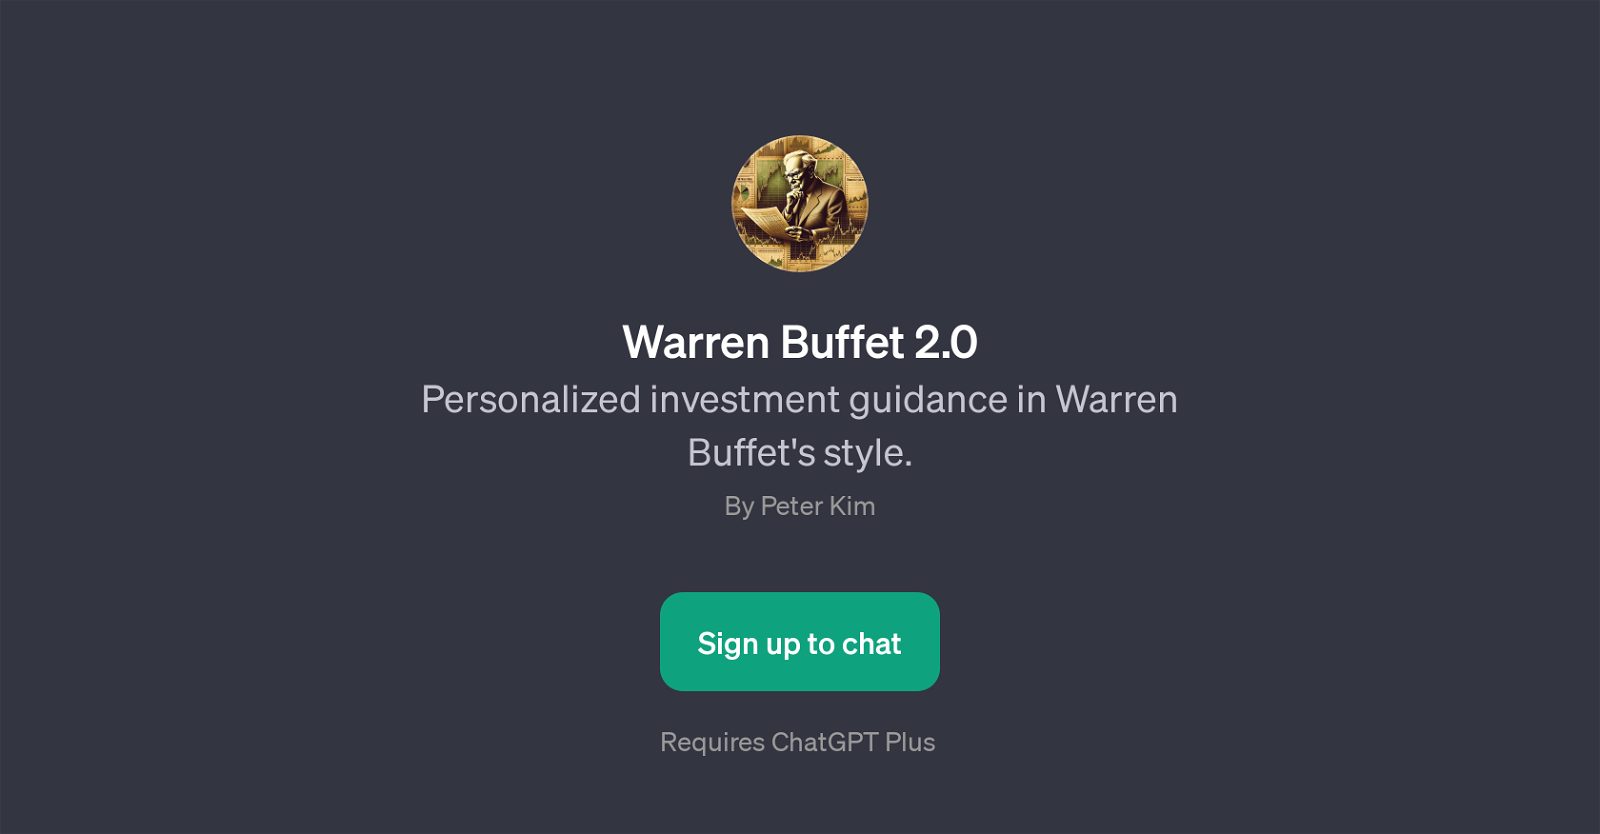 Warren Buffet 2.0 website